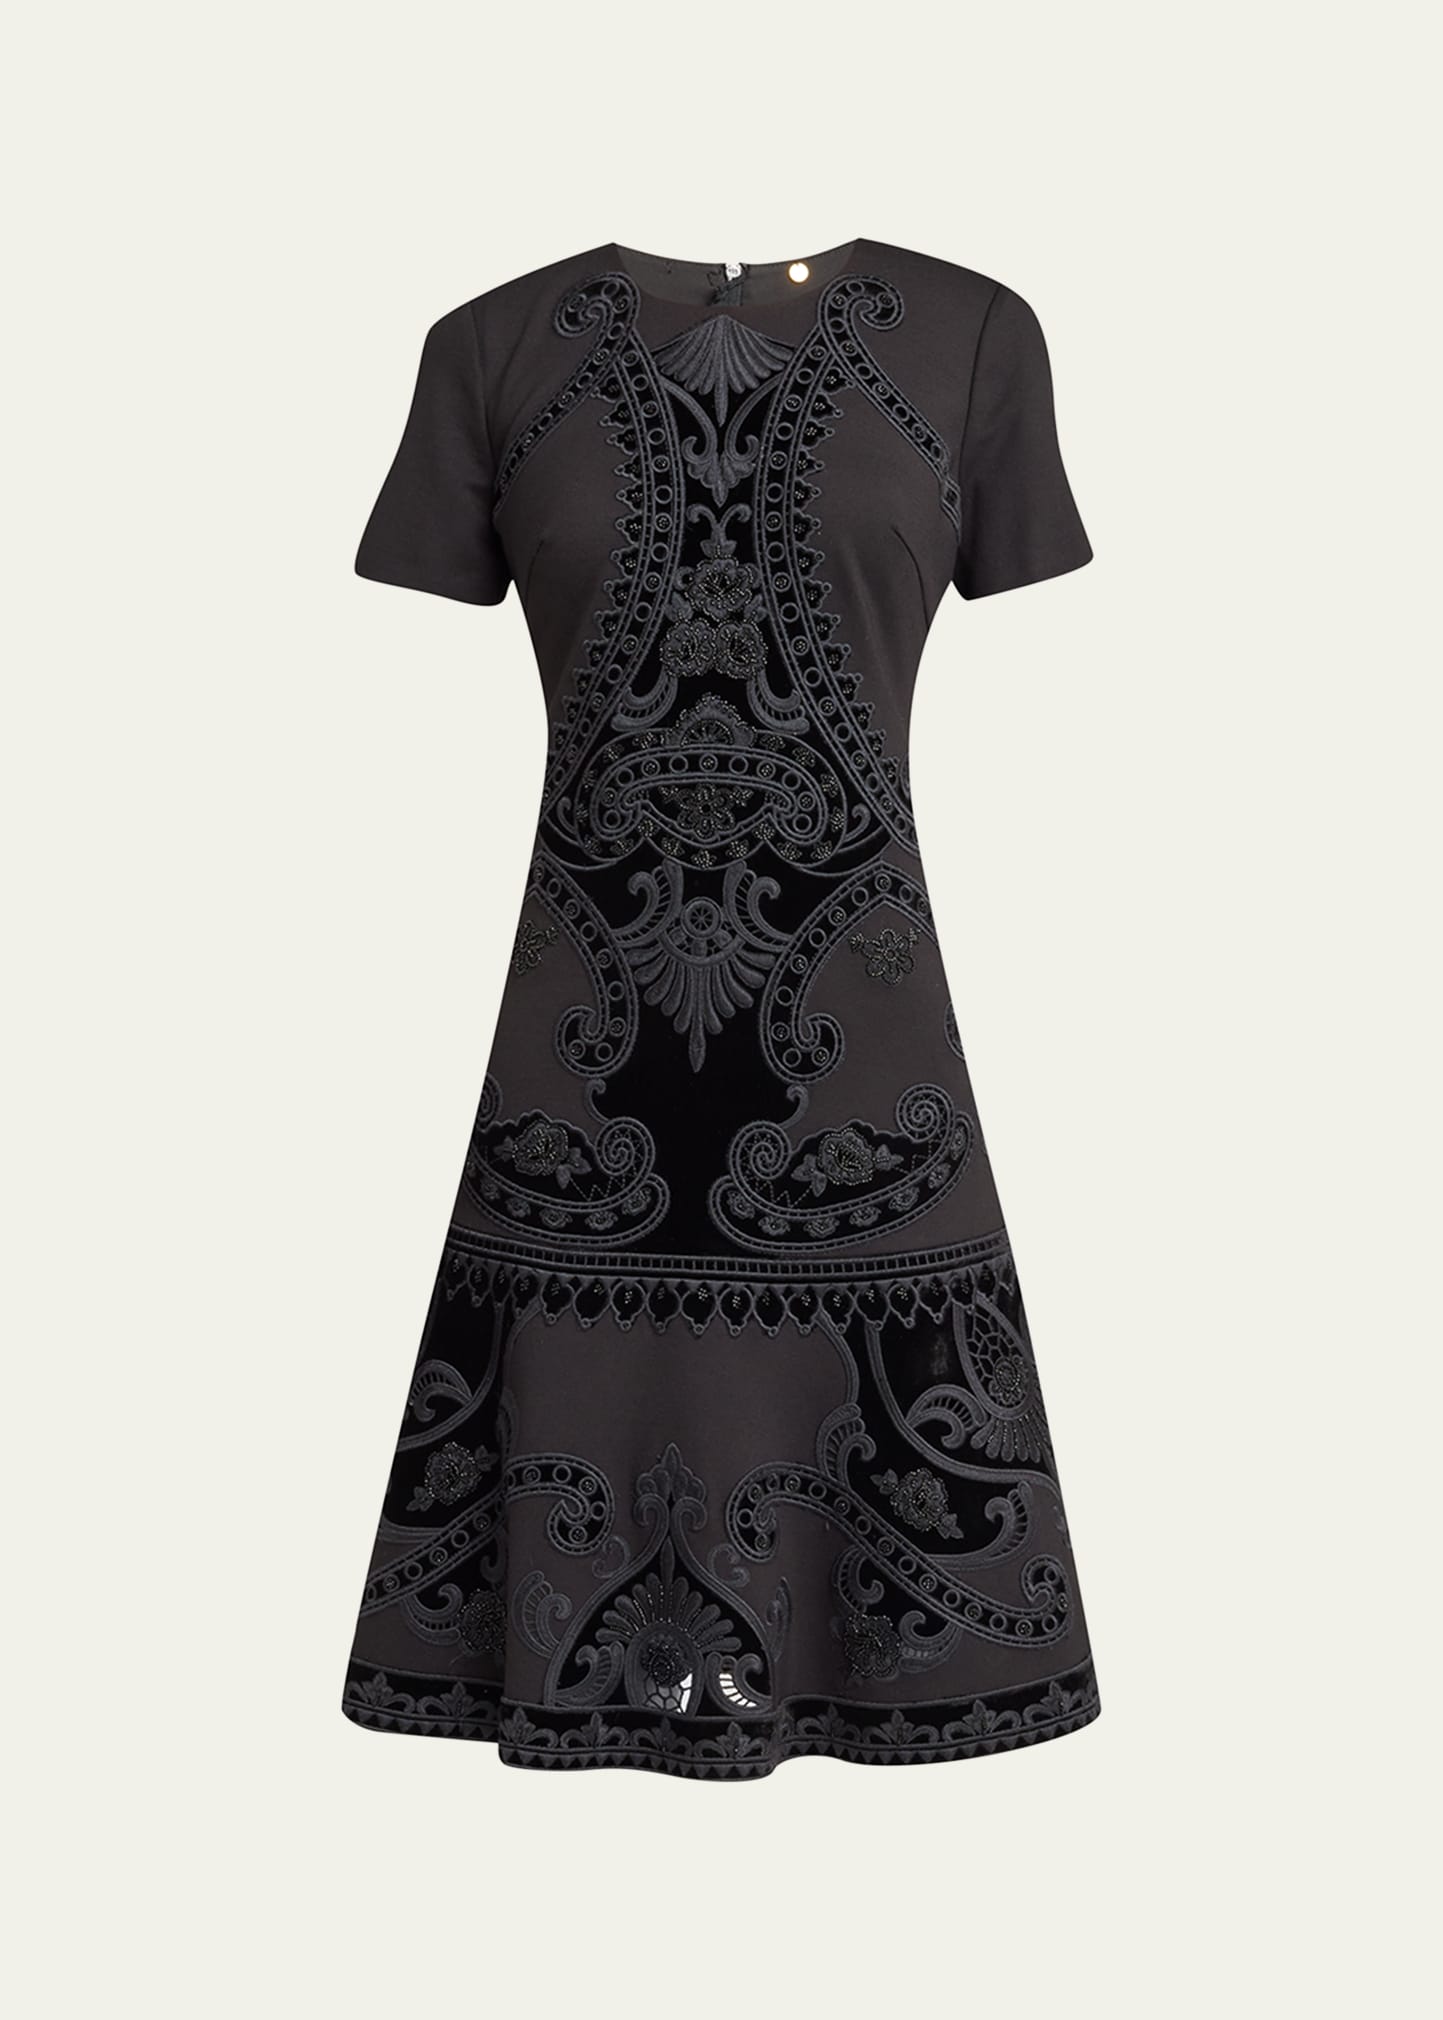 Blaine Velvet Embroidered Short-Sleeve Dress